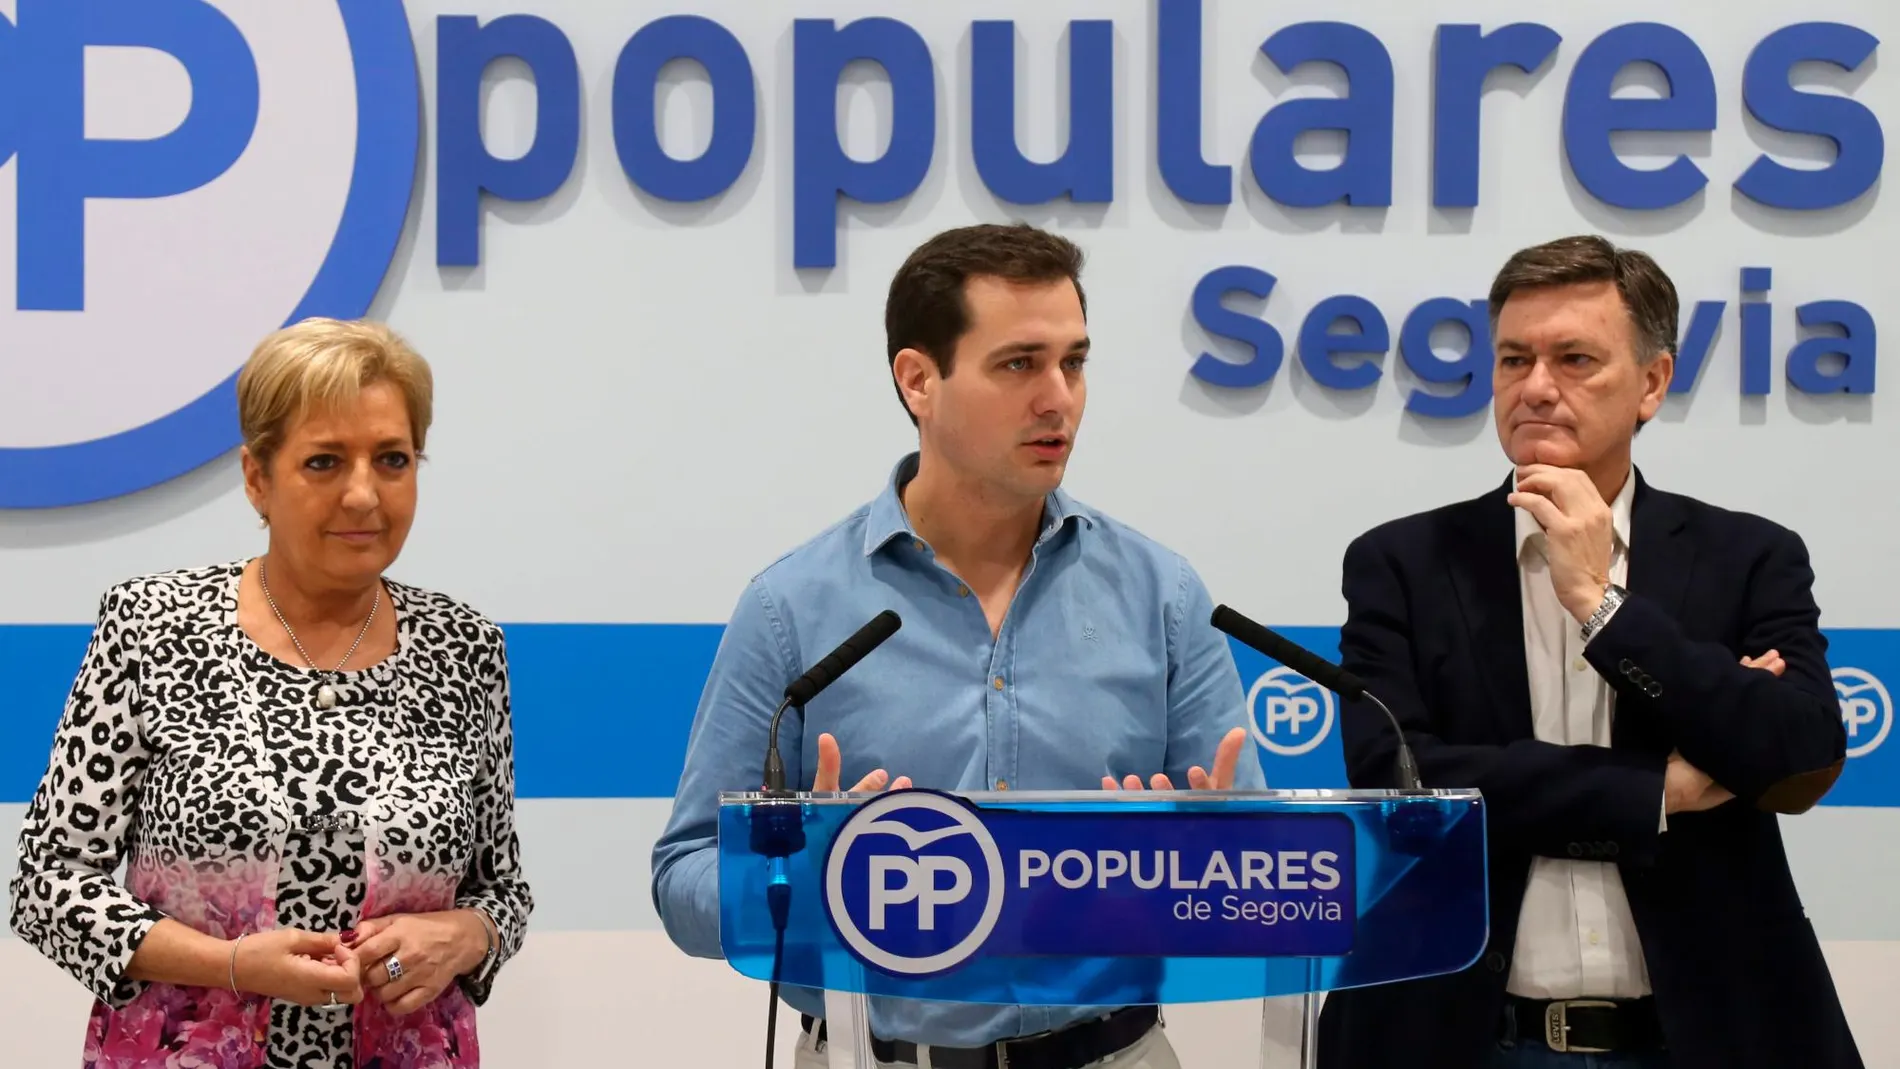 La Presidenta del Partido Popular de Segovia, Paloma Sanz, y el Secretario Autonómico del PPCyL, Francisco Vázquez, presentan al candidato del Partido Popular a la Alcaldía de Segovia, Pablo Pérez